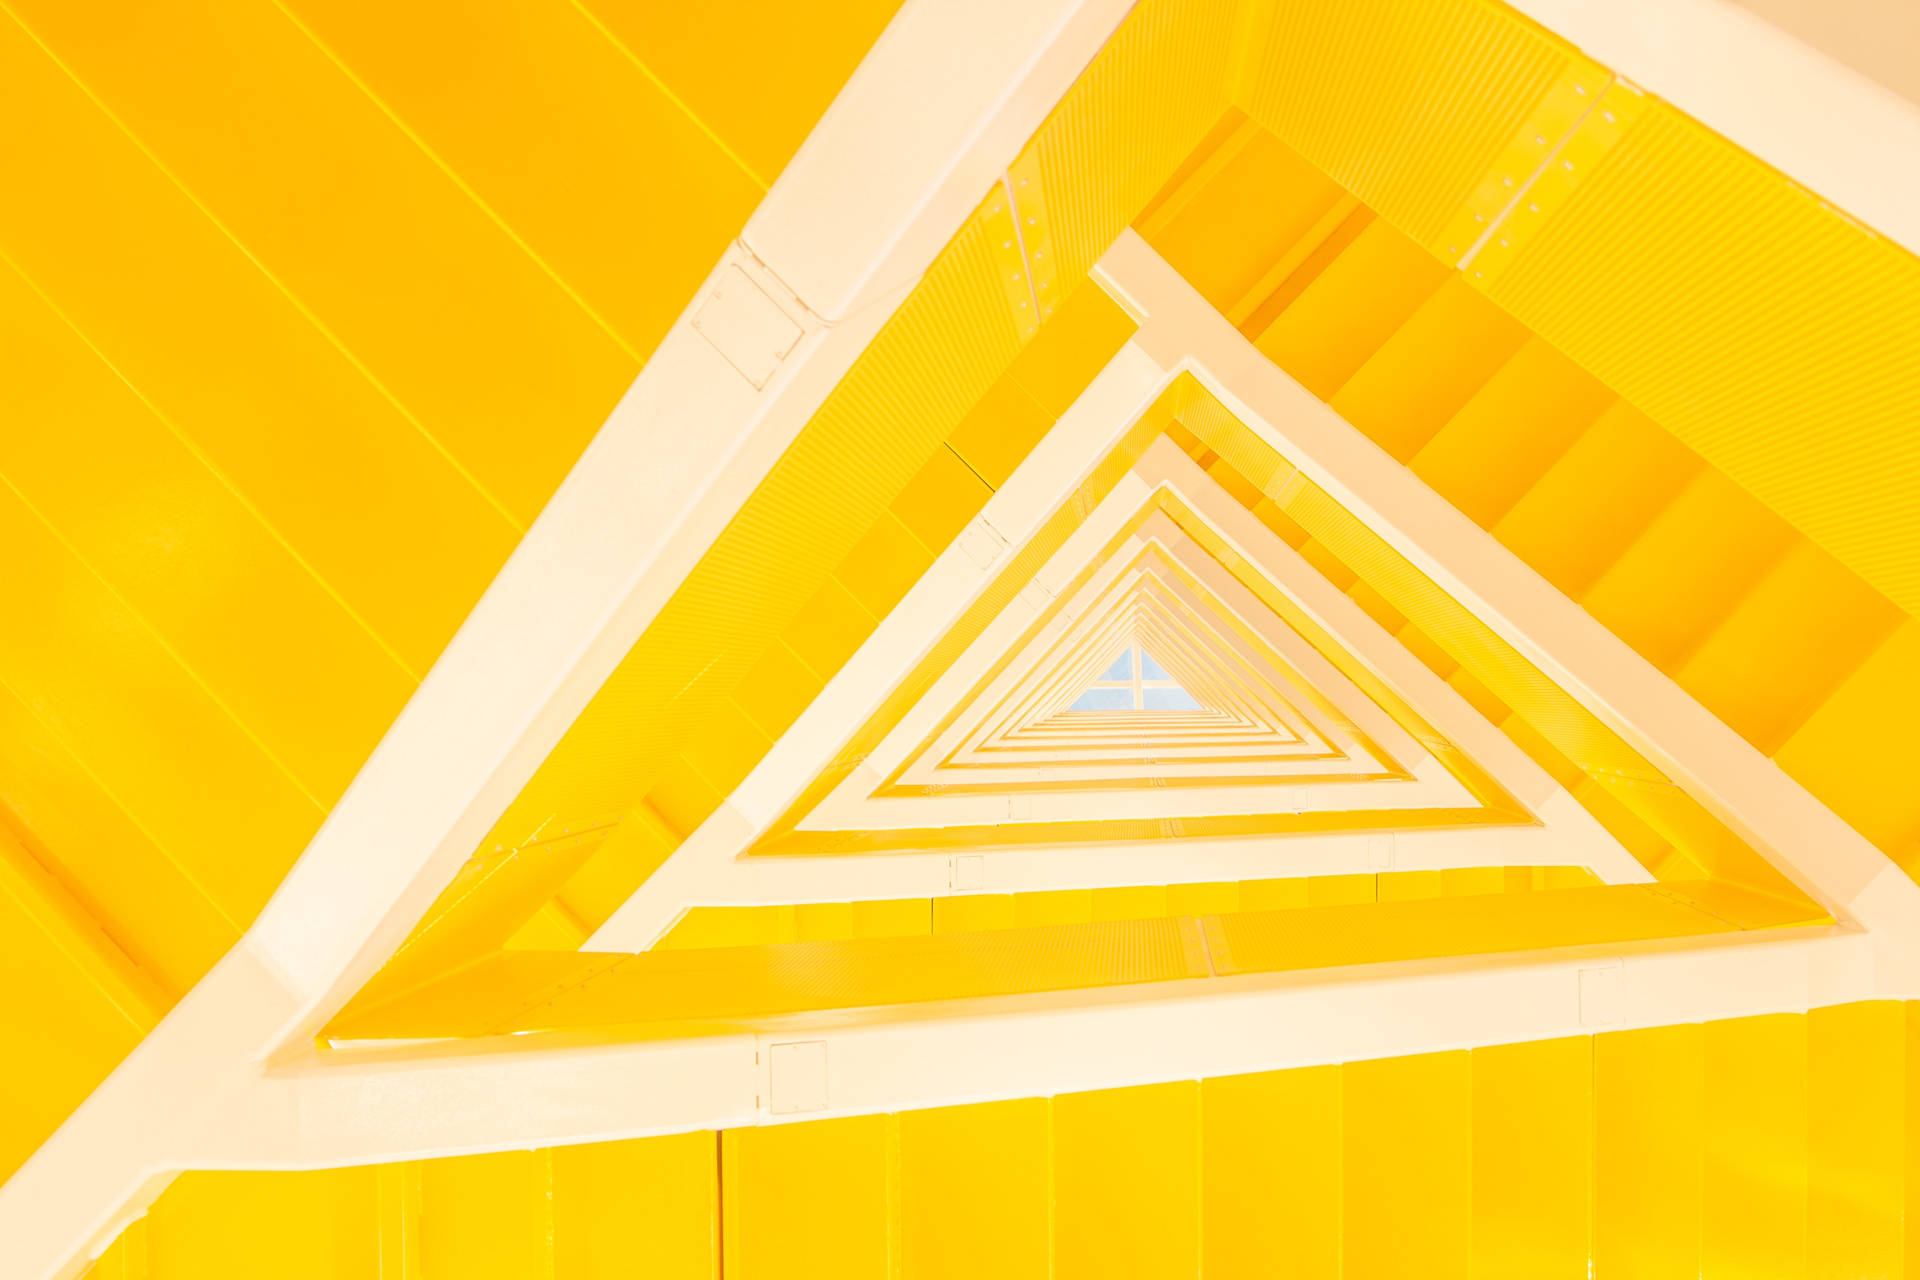 Iphone Home Screen Triangular Yellow Stairs Wallpaper